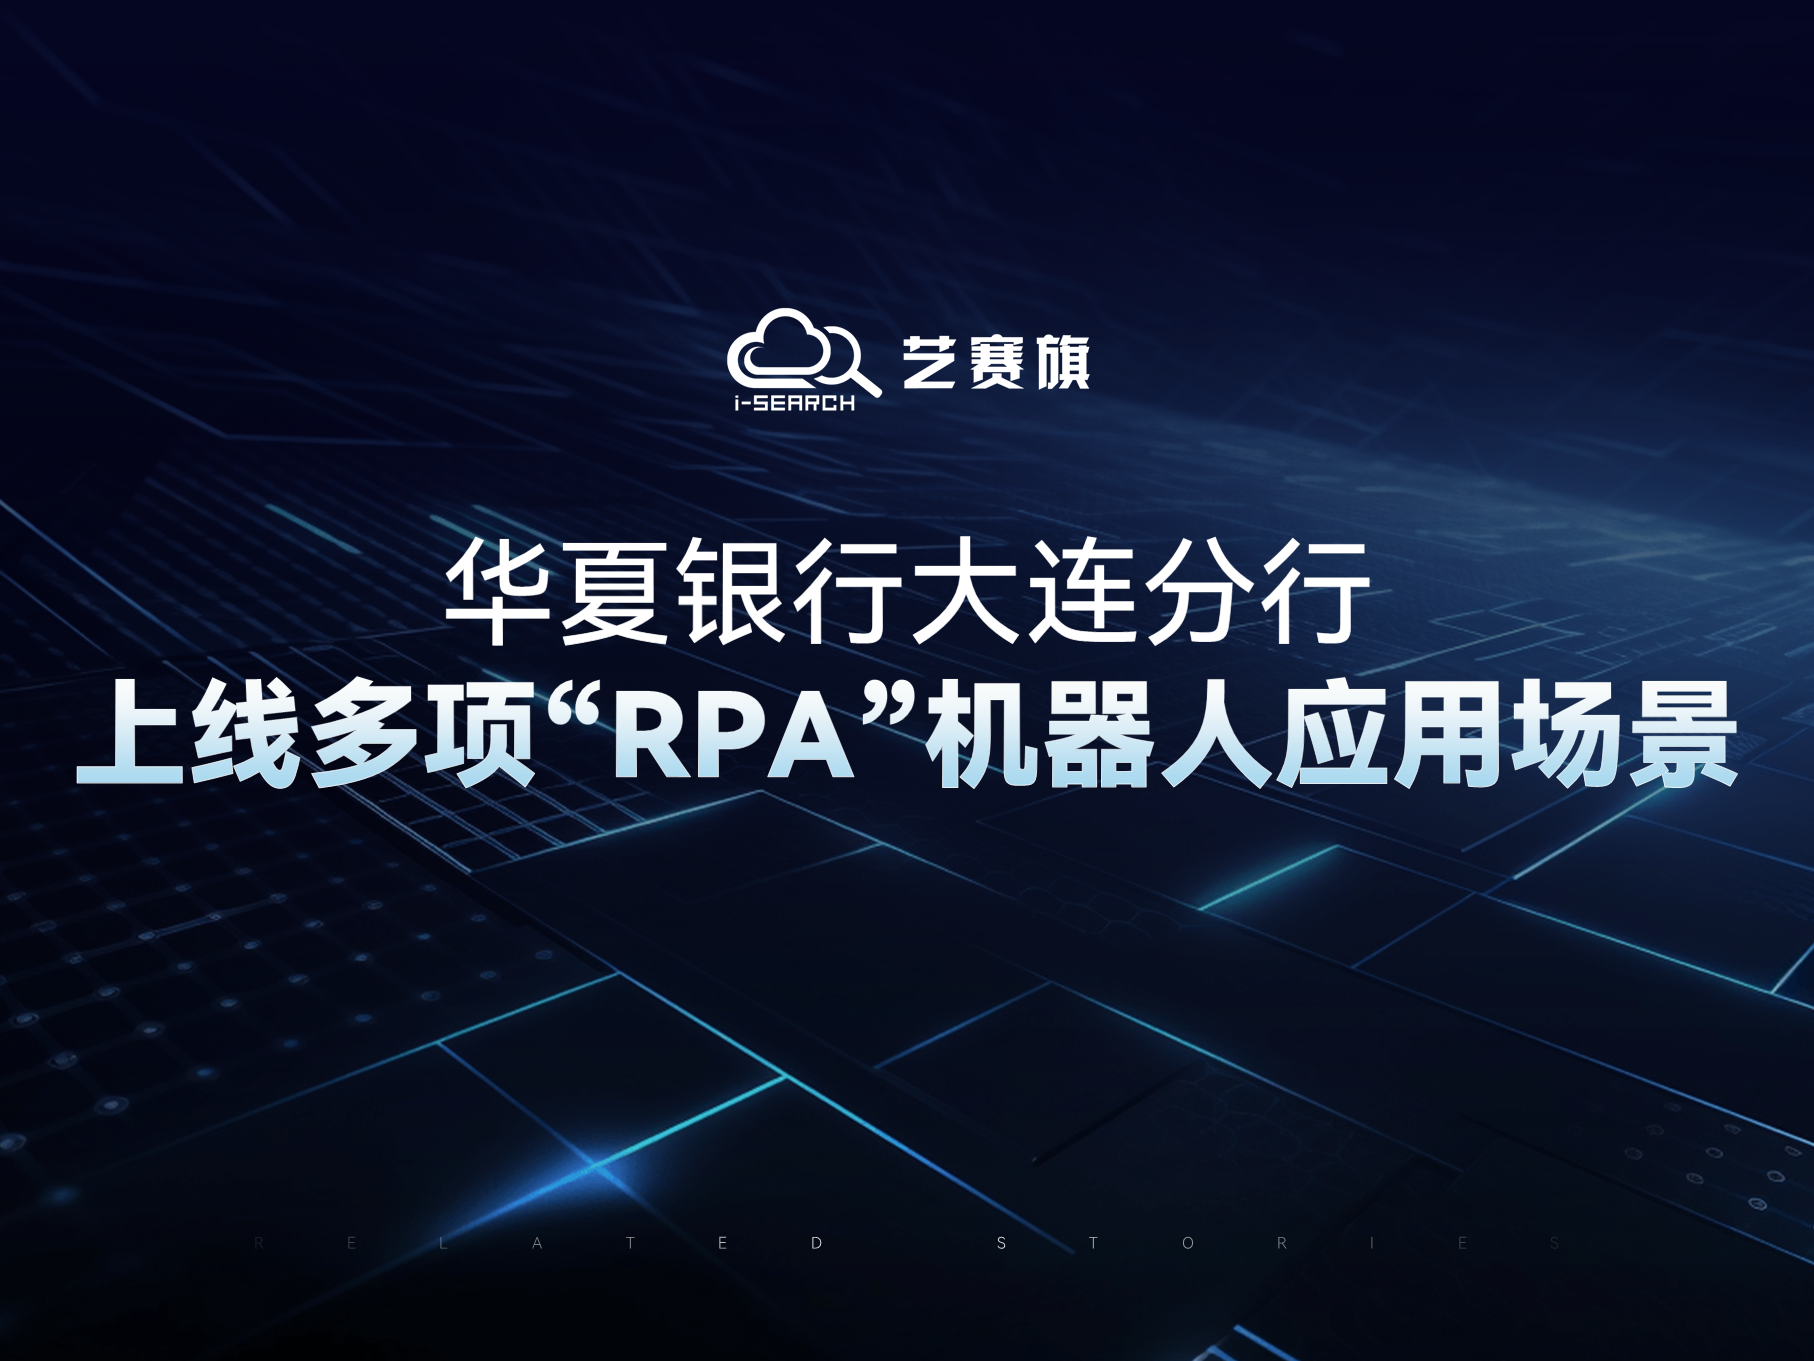 华夏银行大连分行上线多项“RPA”机器人应用场景